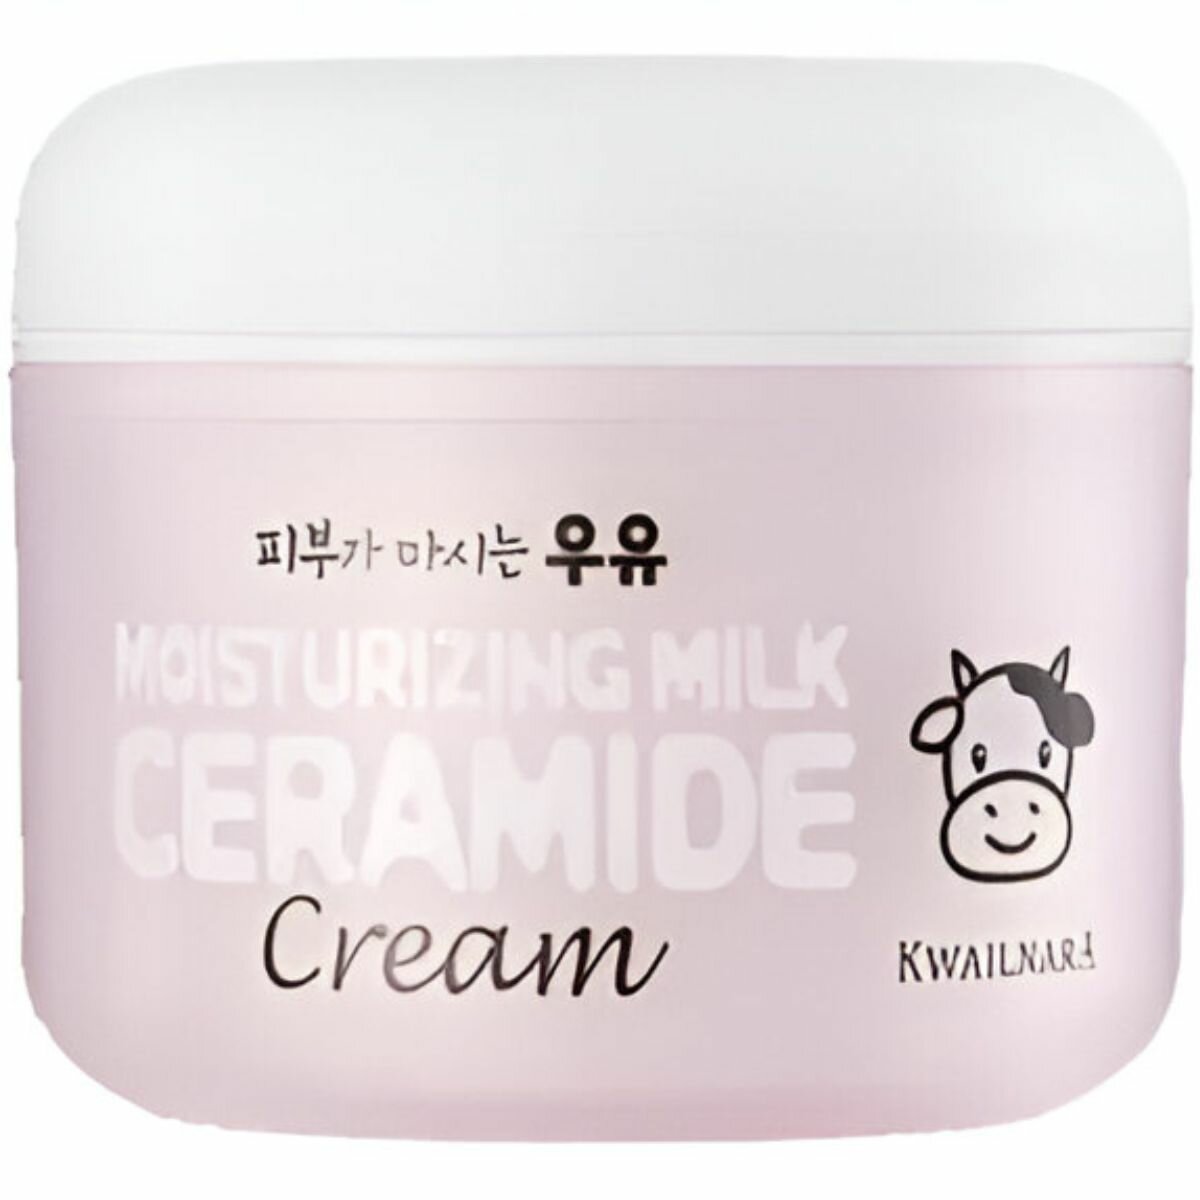 Крем для лица с керамидами Welcos Kwailnara Moisturizing Milk Ceramide Cream